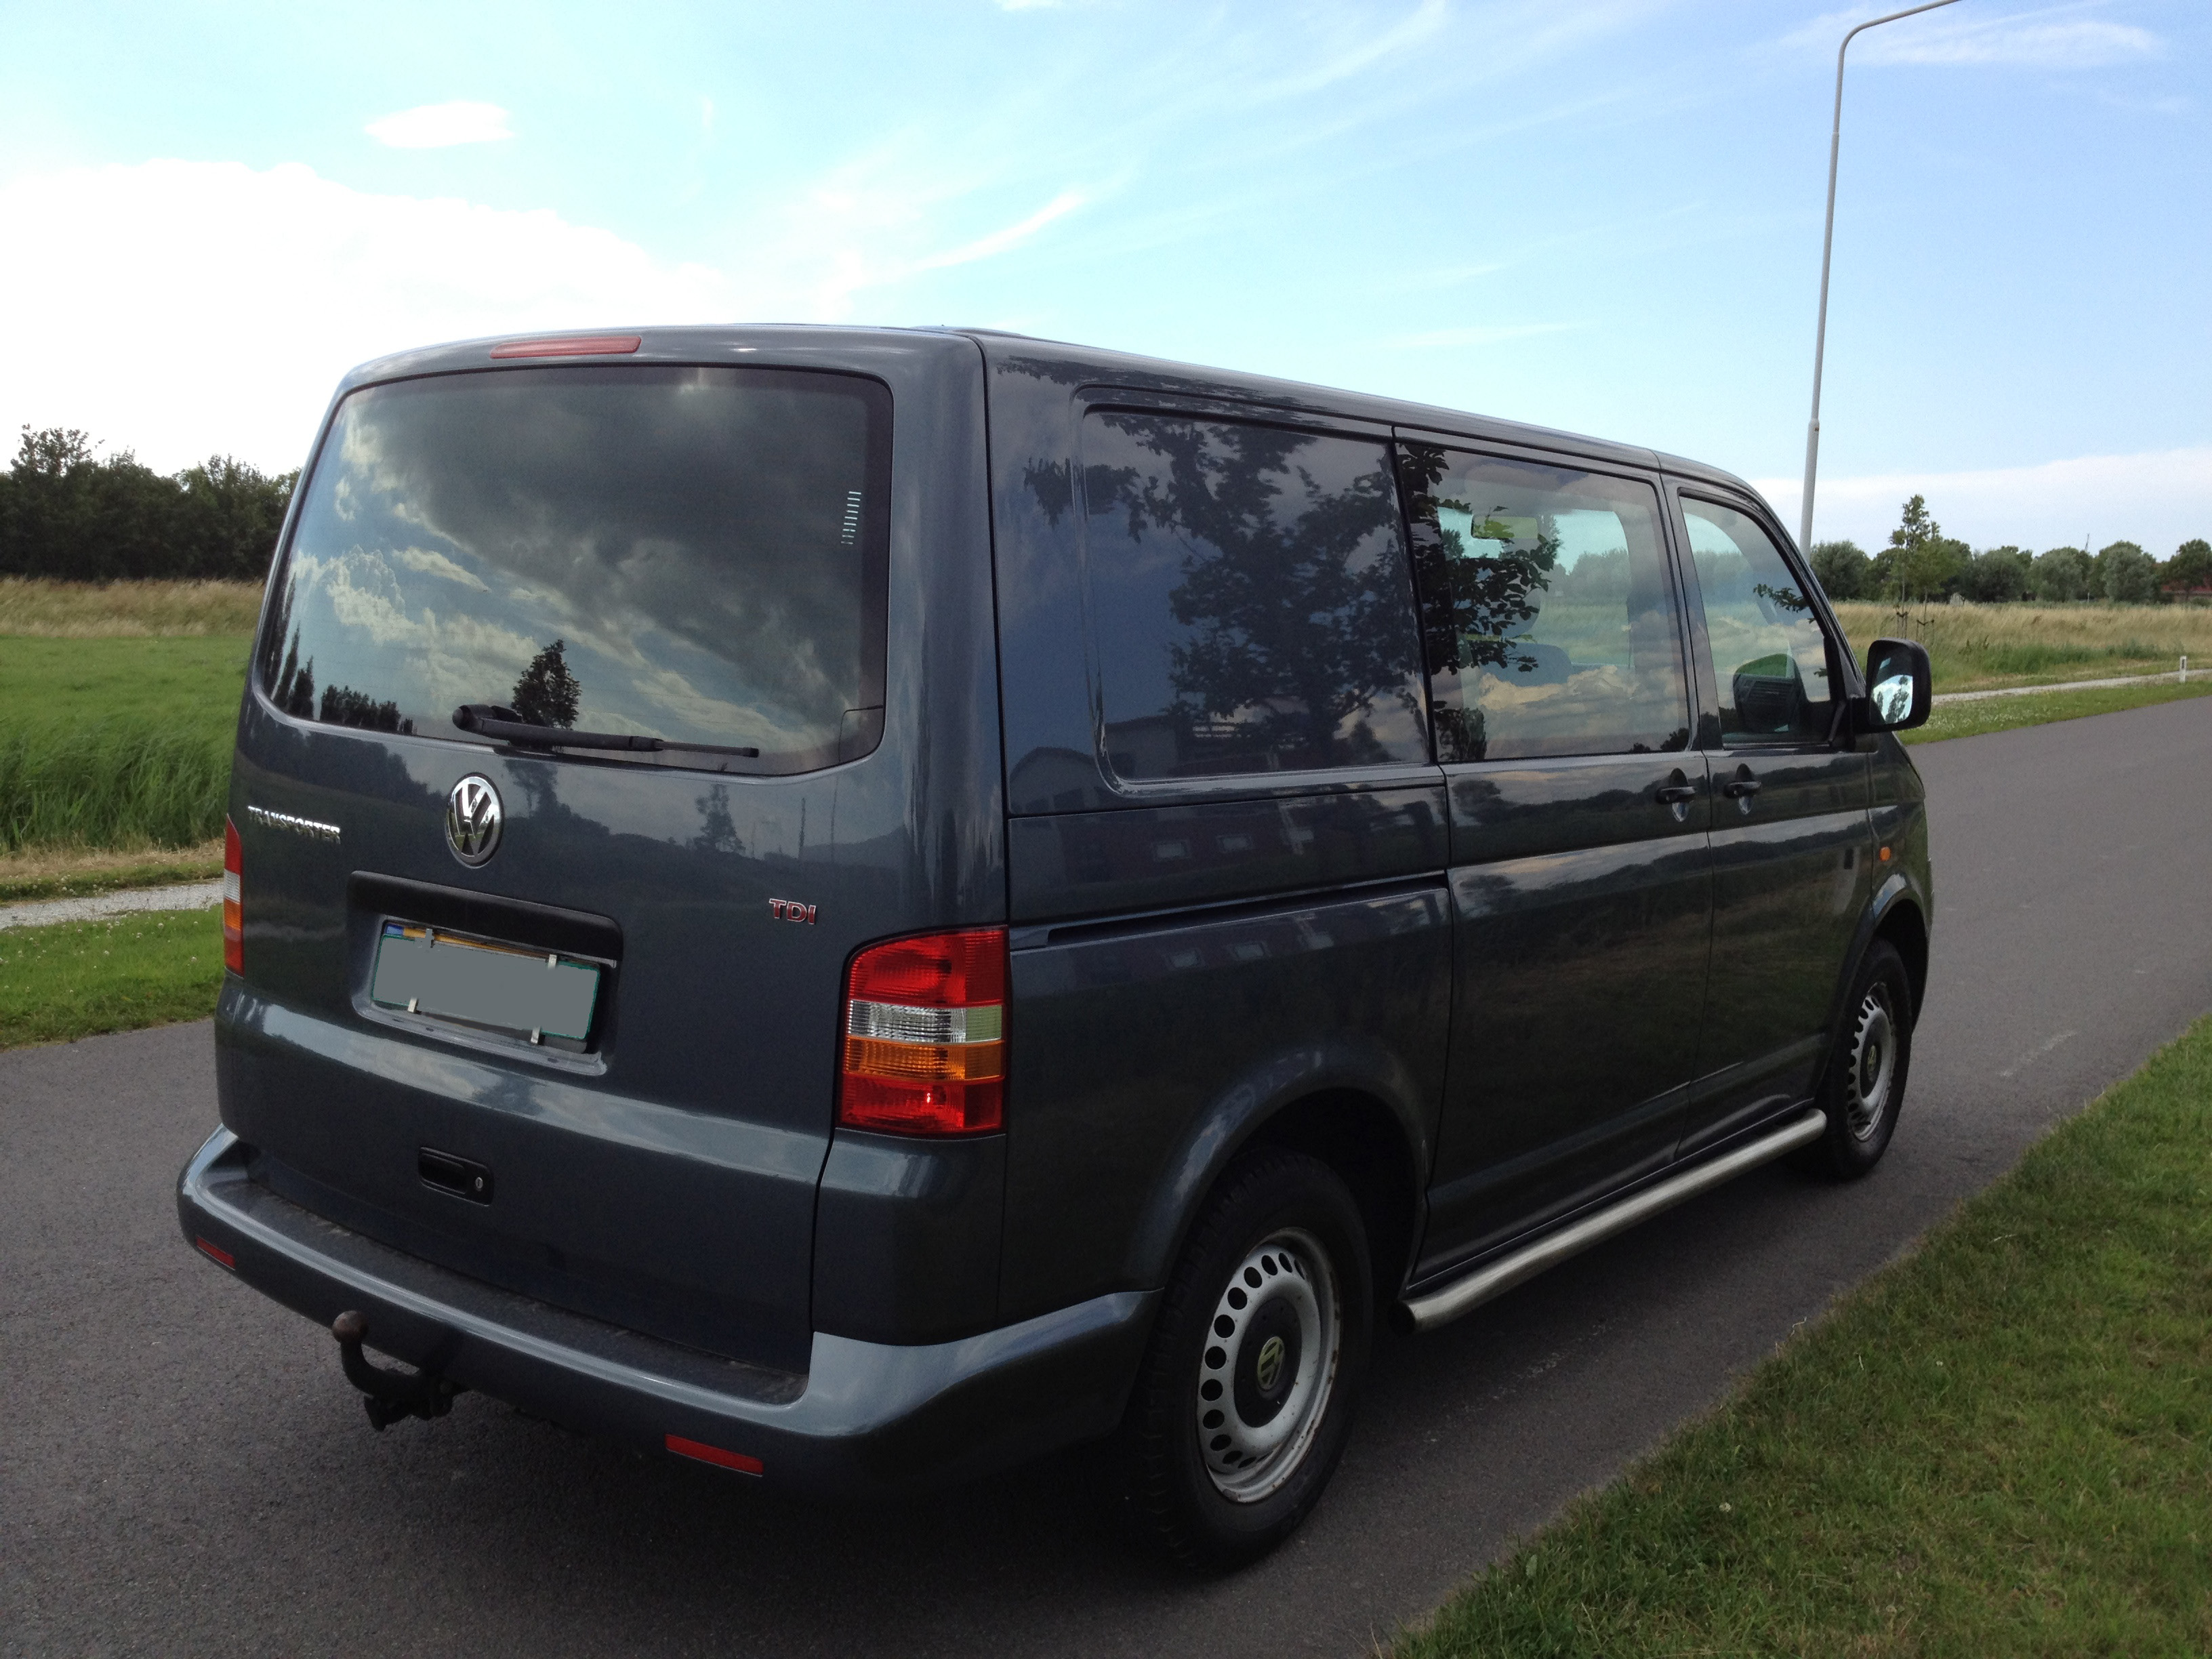 Bekijk het internet Millimeter Rubber Volkswagen Transporter T5 naar Camper - vwcampersite -  https://www.weetjewel.nl